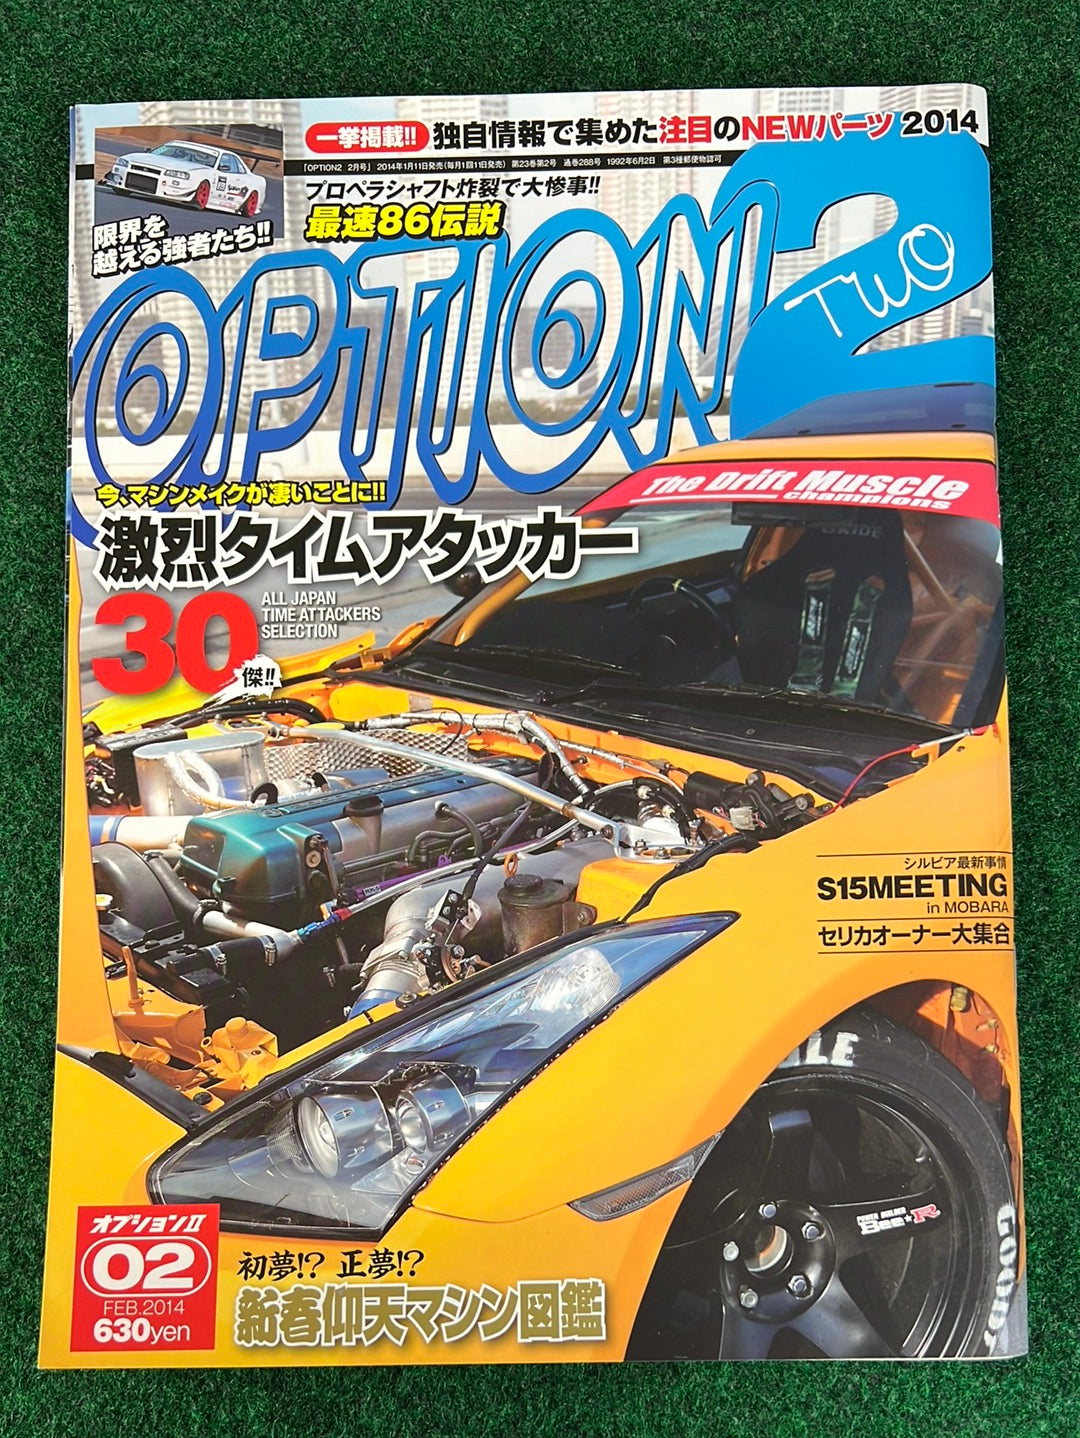 OPTION2 Magazine - February 2014